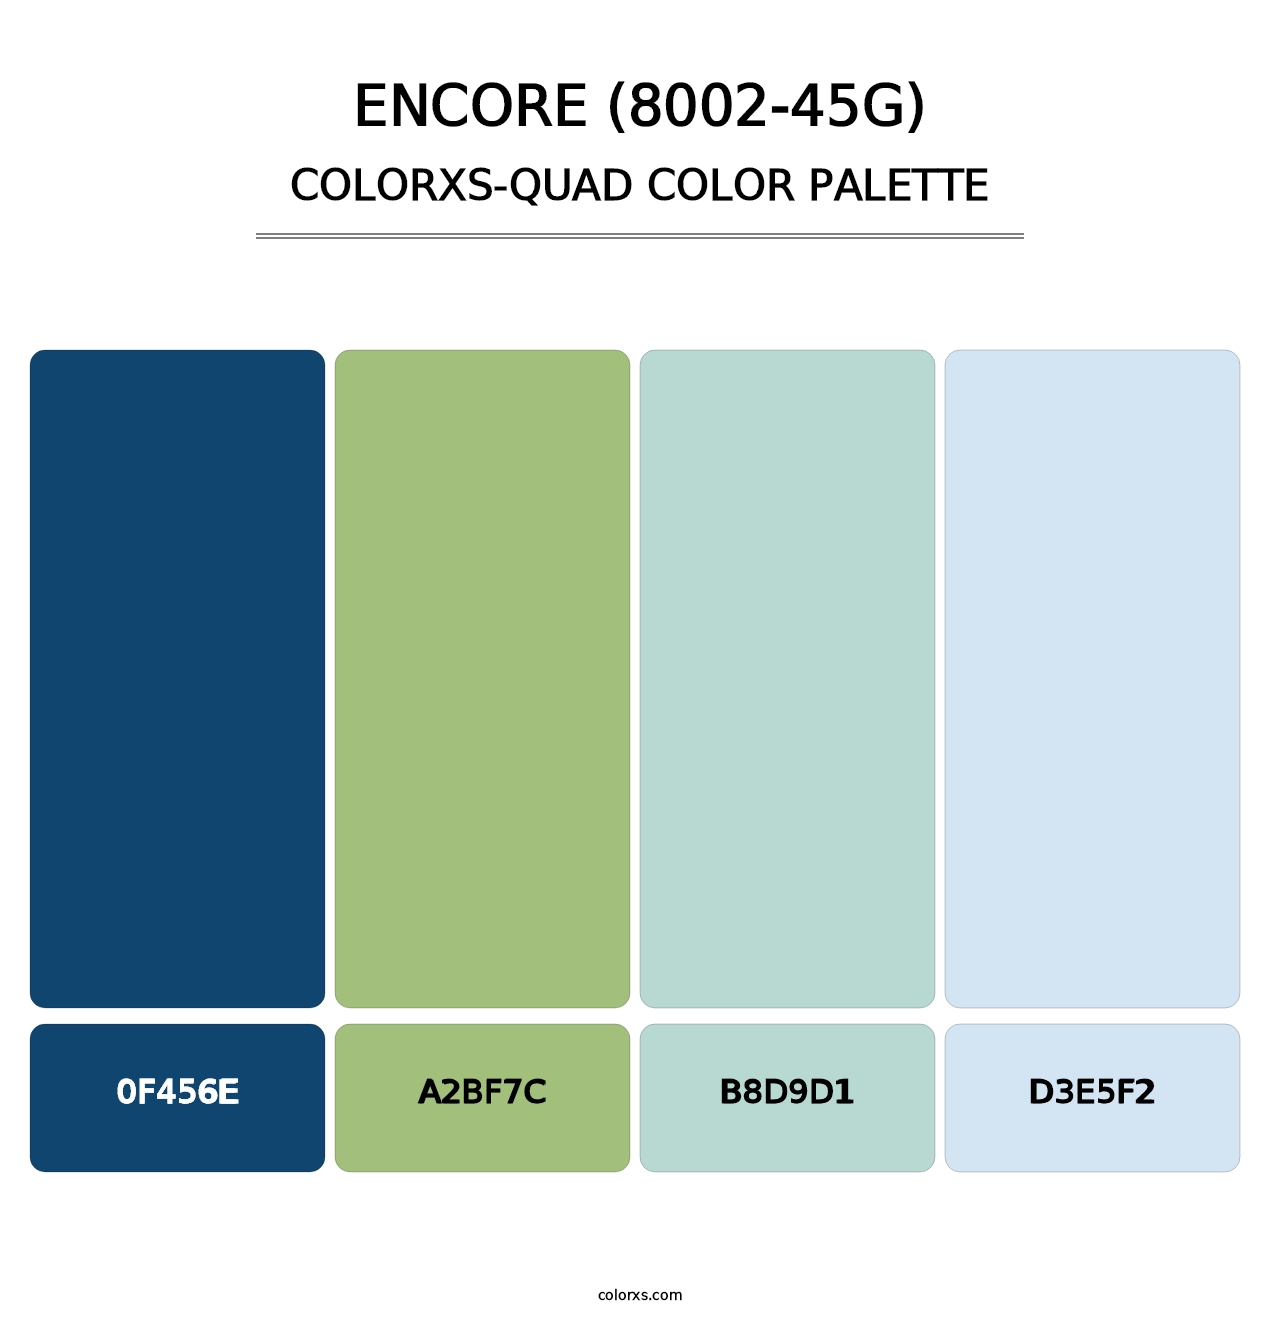 Encore (8002-45G) - Colorxs Quad Palette